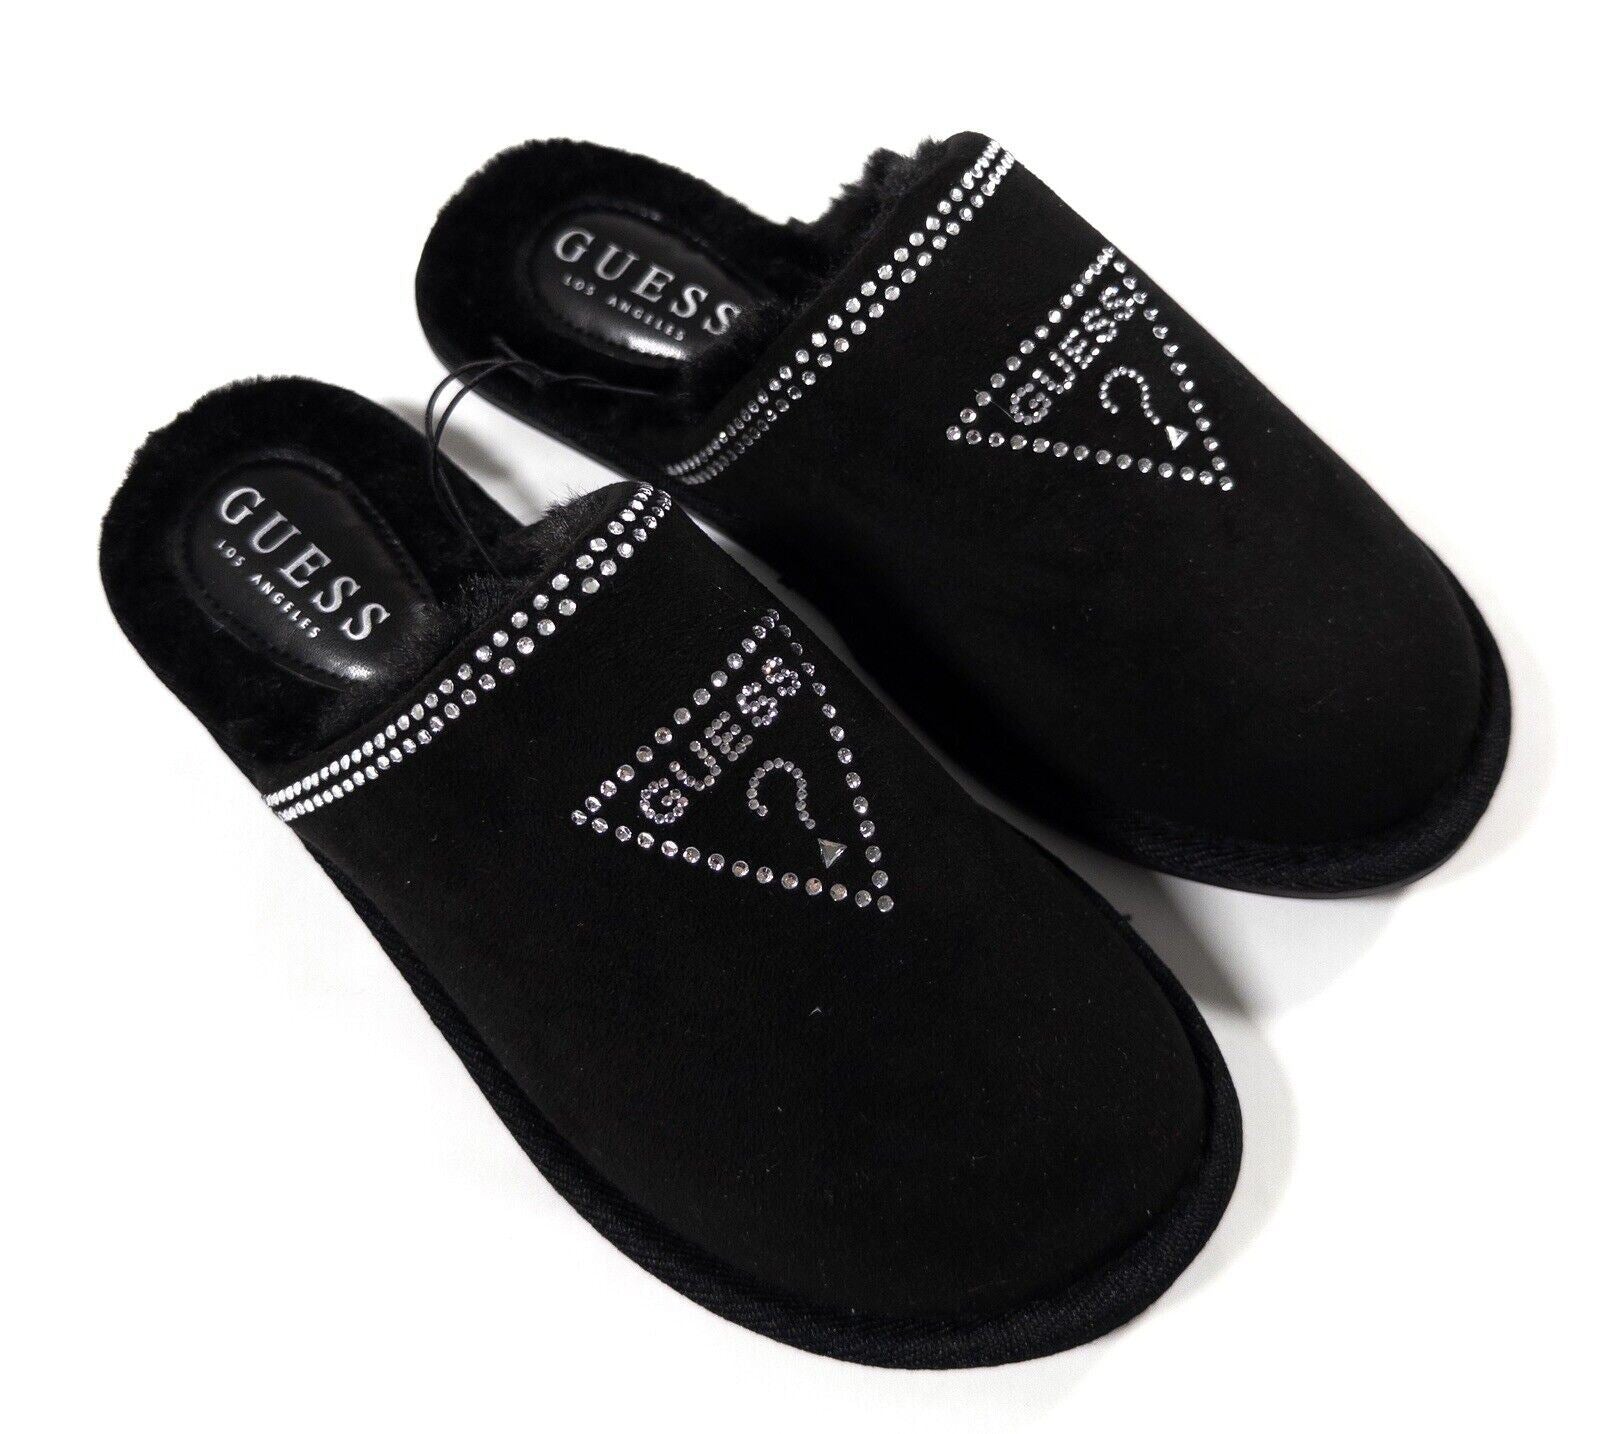 GUESS Women's Black Fluffy Slip On Slippers Size UK 5